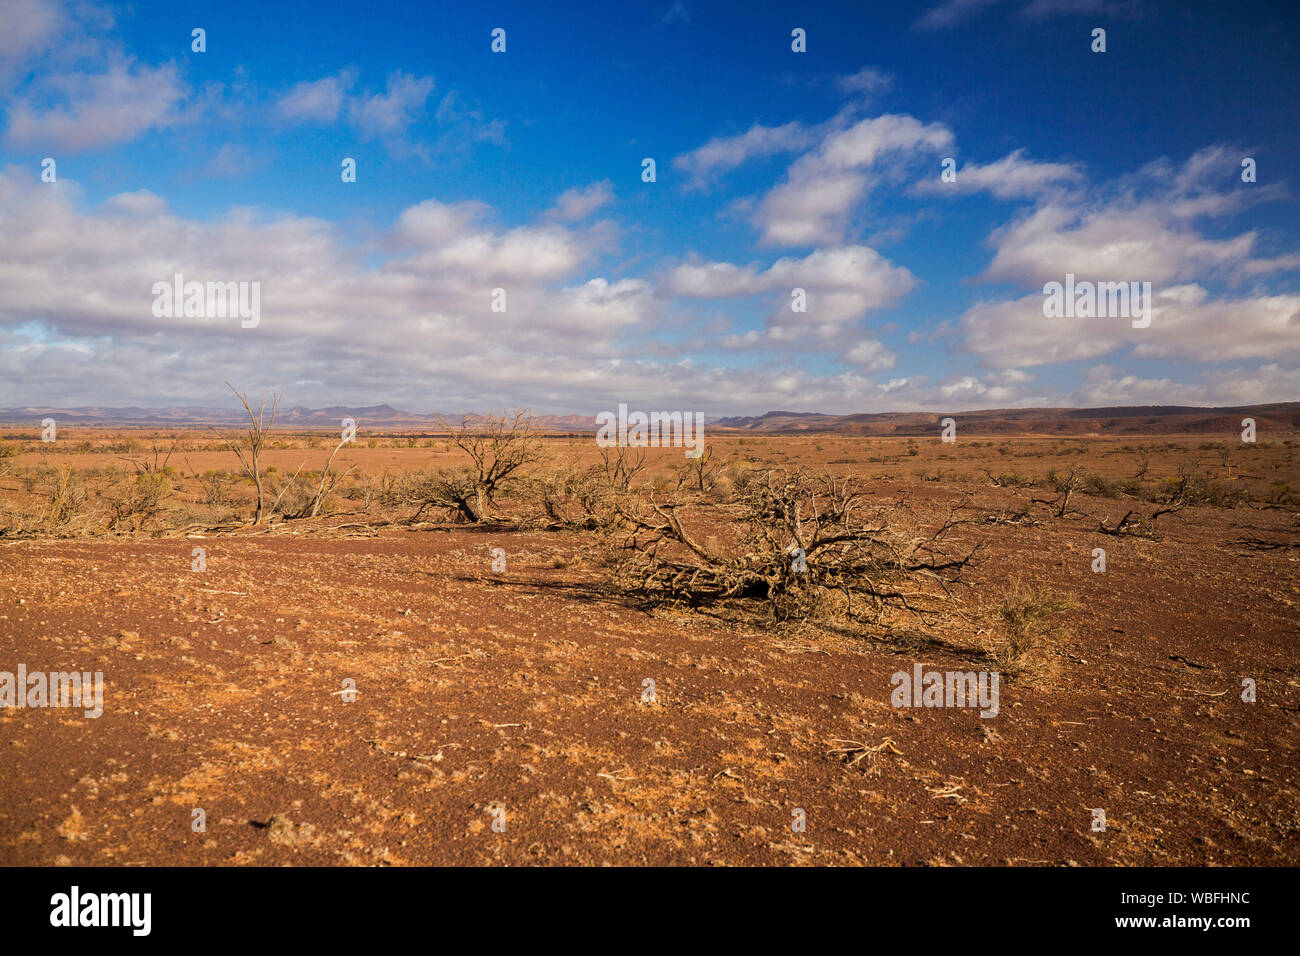 Outback Australiano árido paisaje árido suelo rojo de llanuras, restos de árboles muertos durante la sequía, y Flinders Ranges en distancia bajo un cielo azul Foto de stock